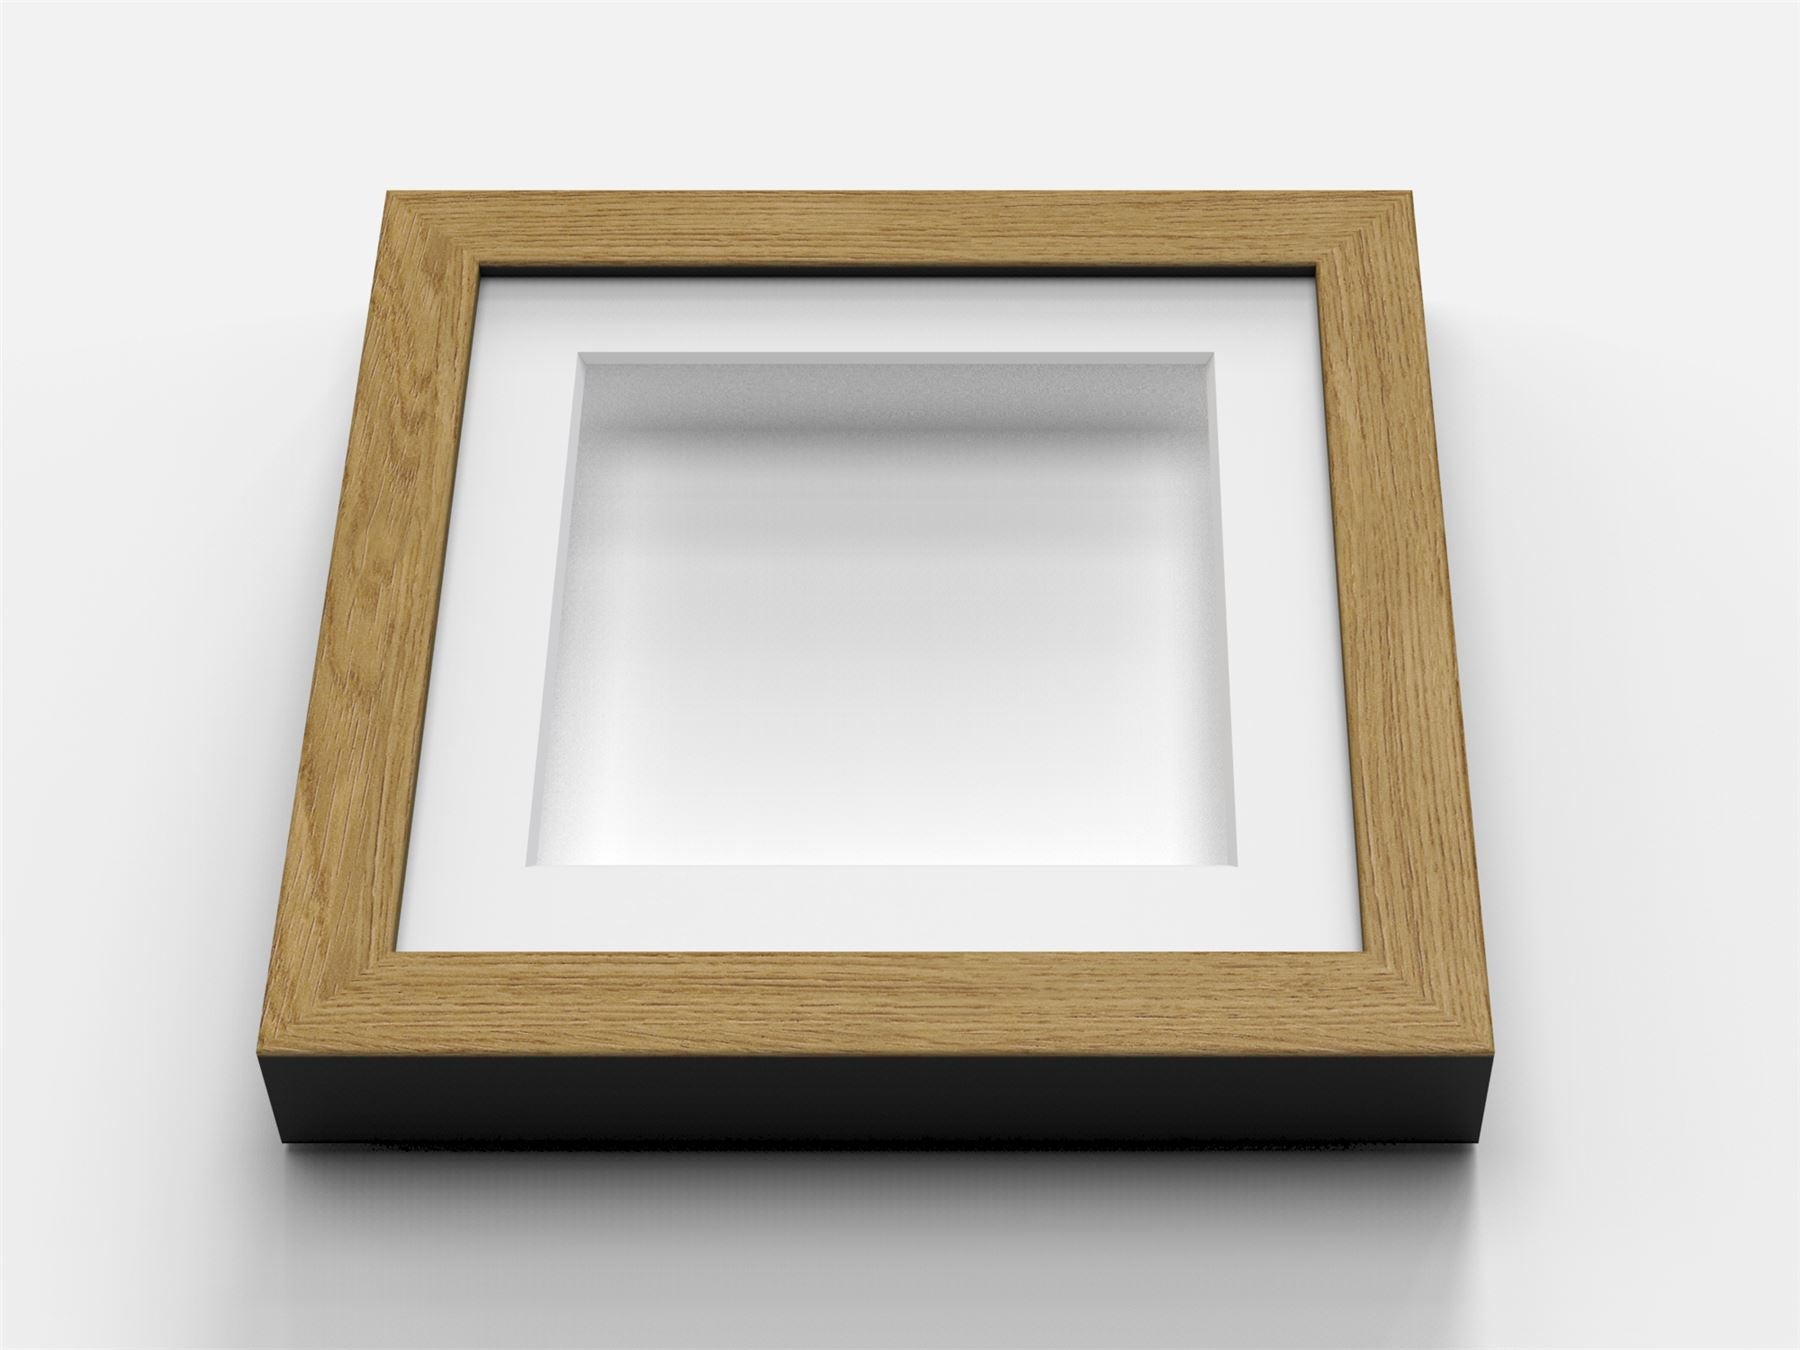 Oak picture frame, 19.7' x 19.7' - Wooden oak frame, 19.7' x 19.7